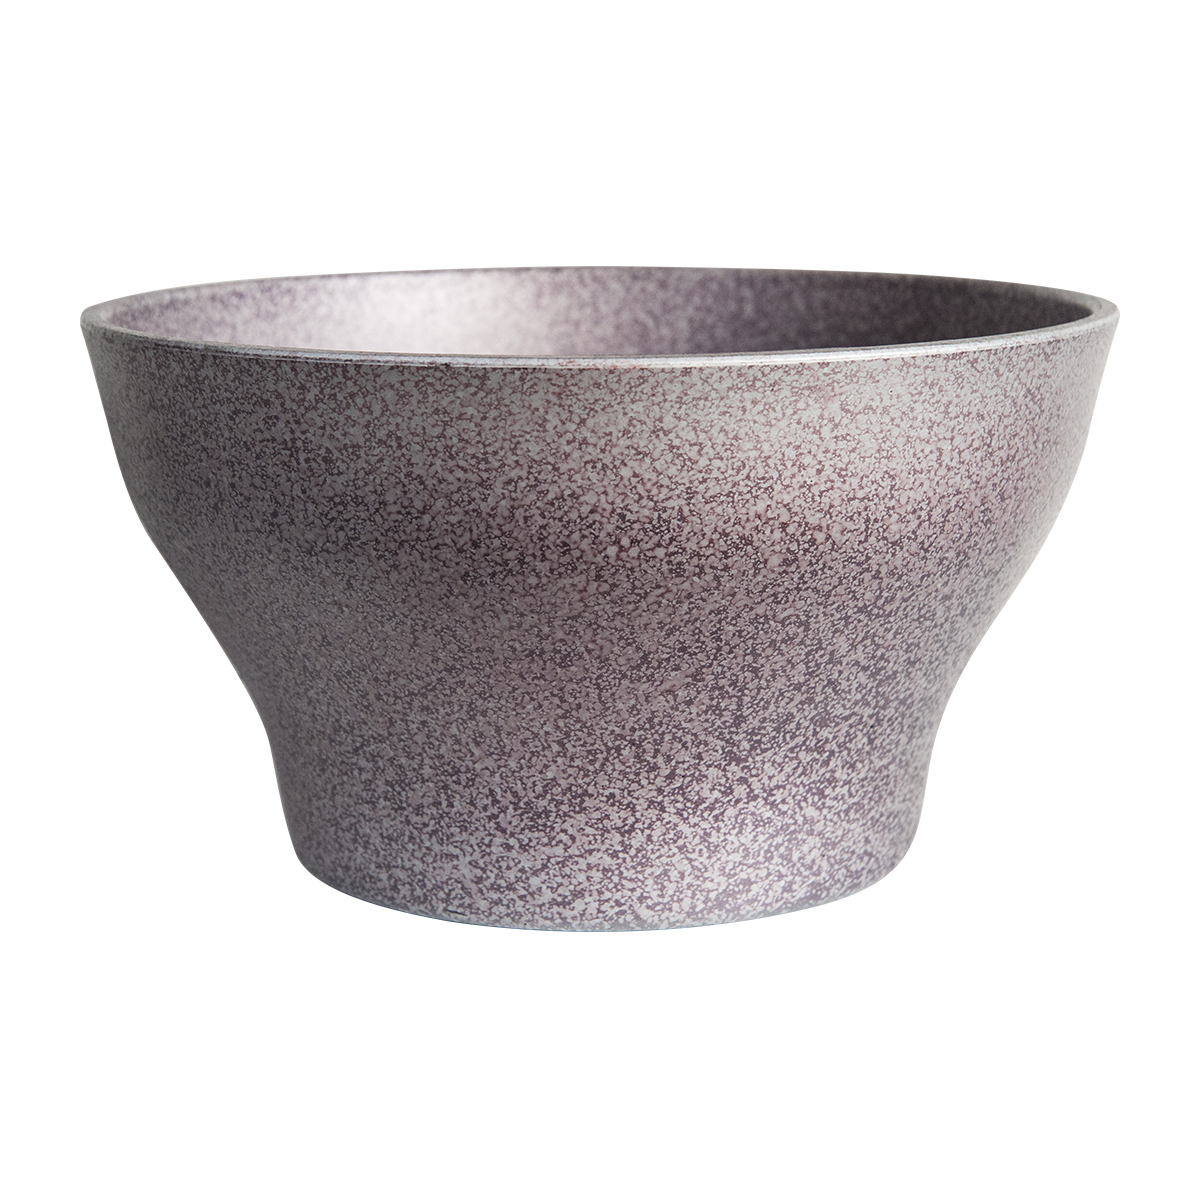 Speckle Bowl Large Glazed Ceramic Effect Planter